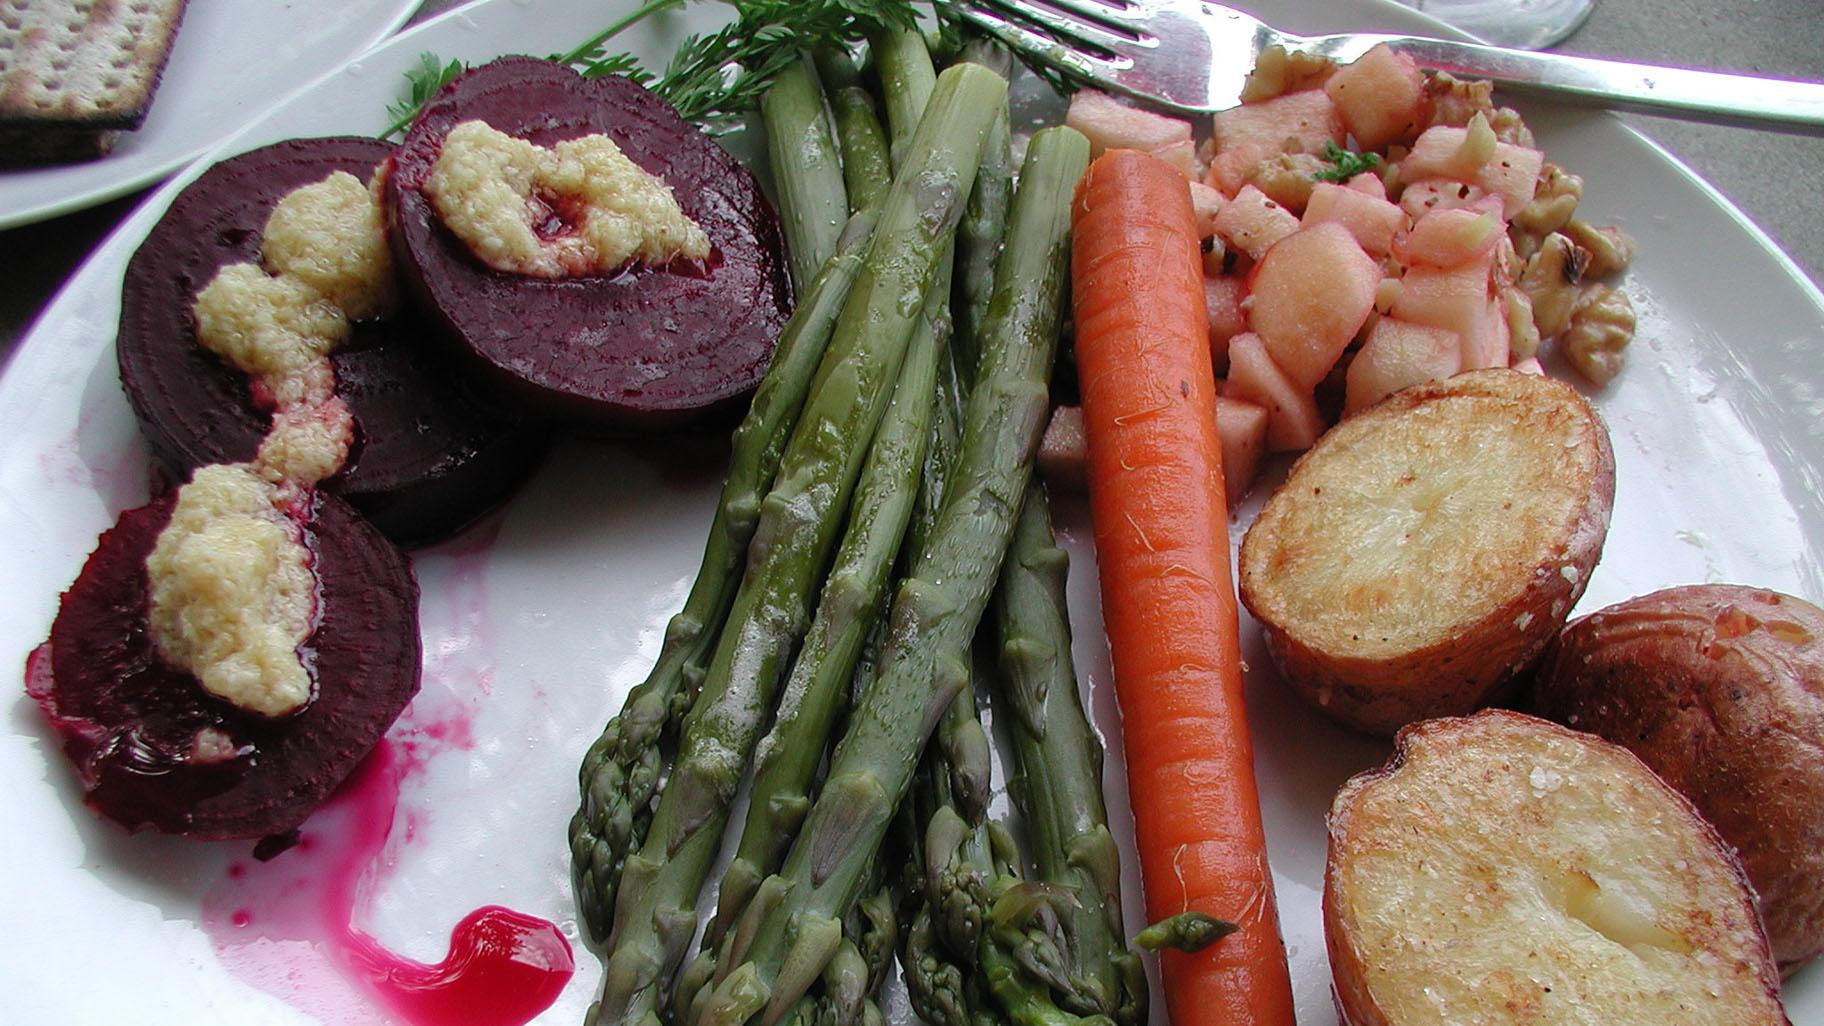 A Seder dinner service. (mollyjade / Flickr)